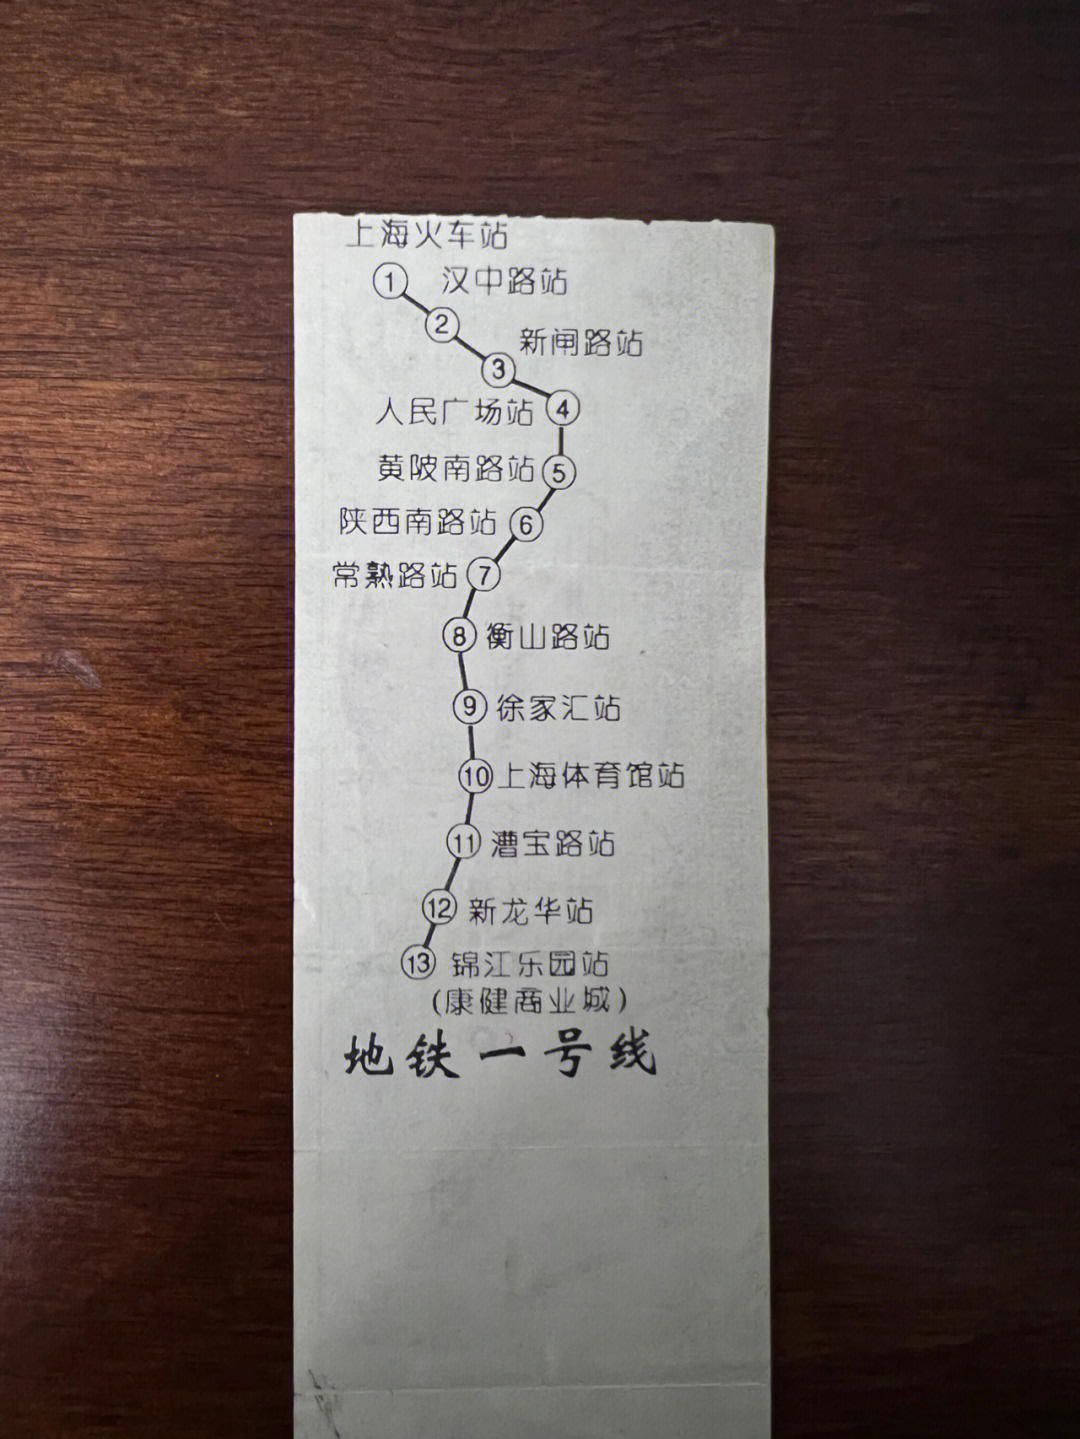 一块钱的上海地铁票还记得吗